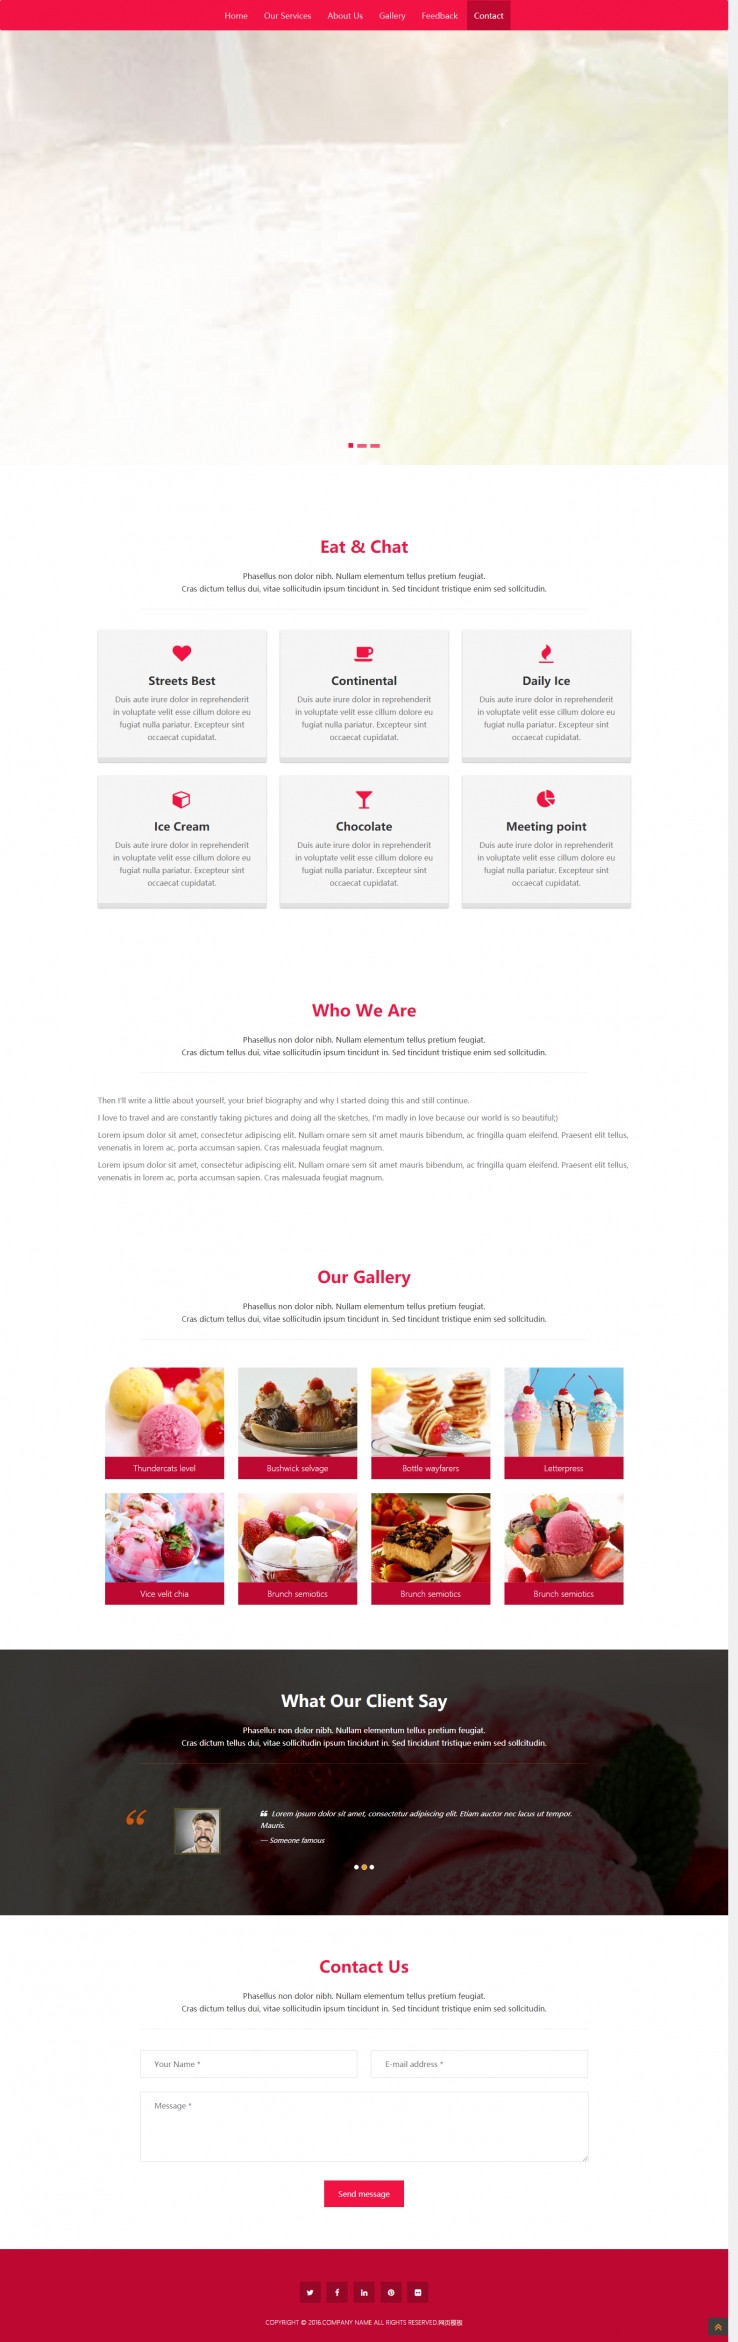 红色扁平化风格的冰淇淋企业网站模板